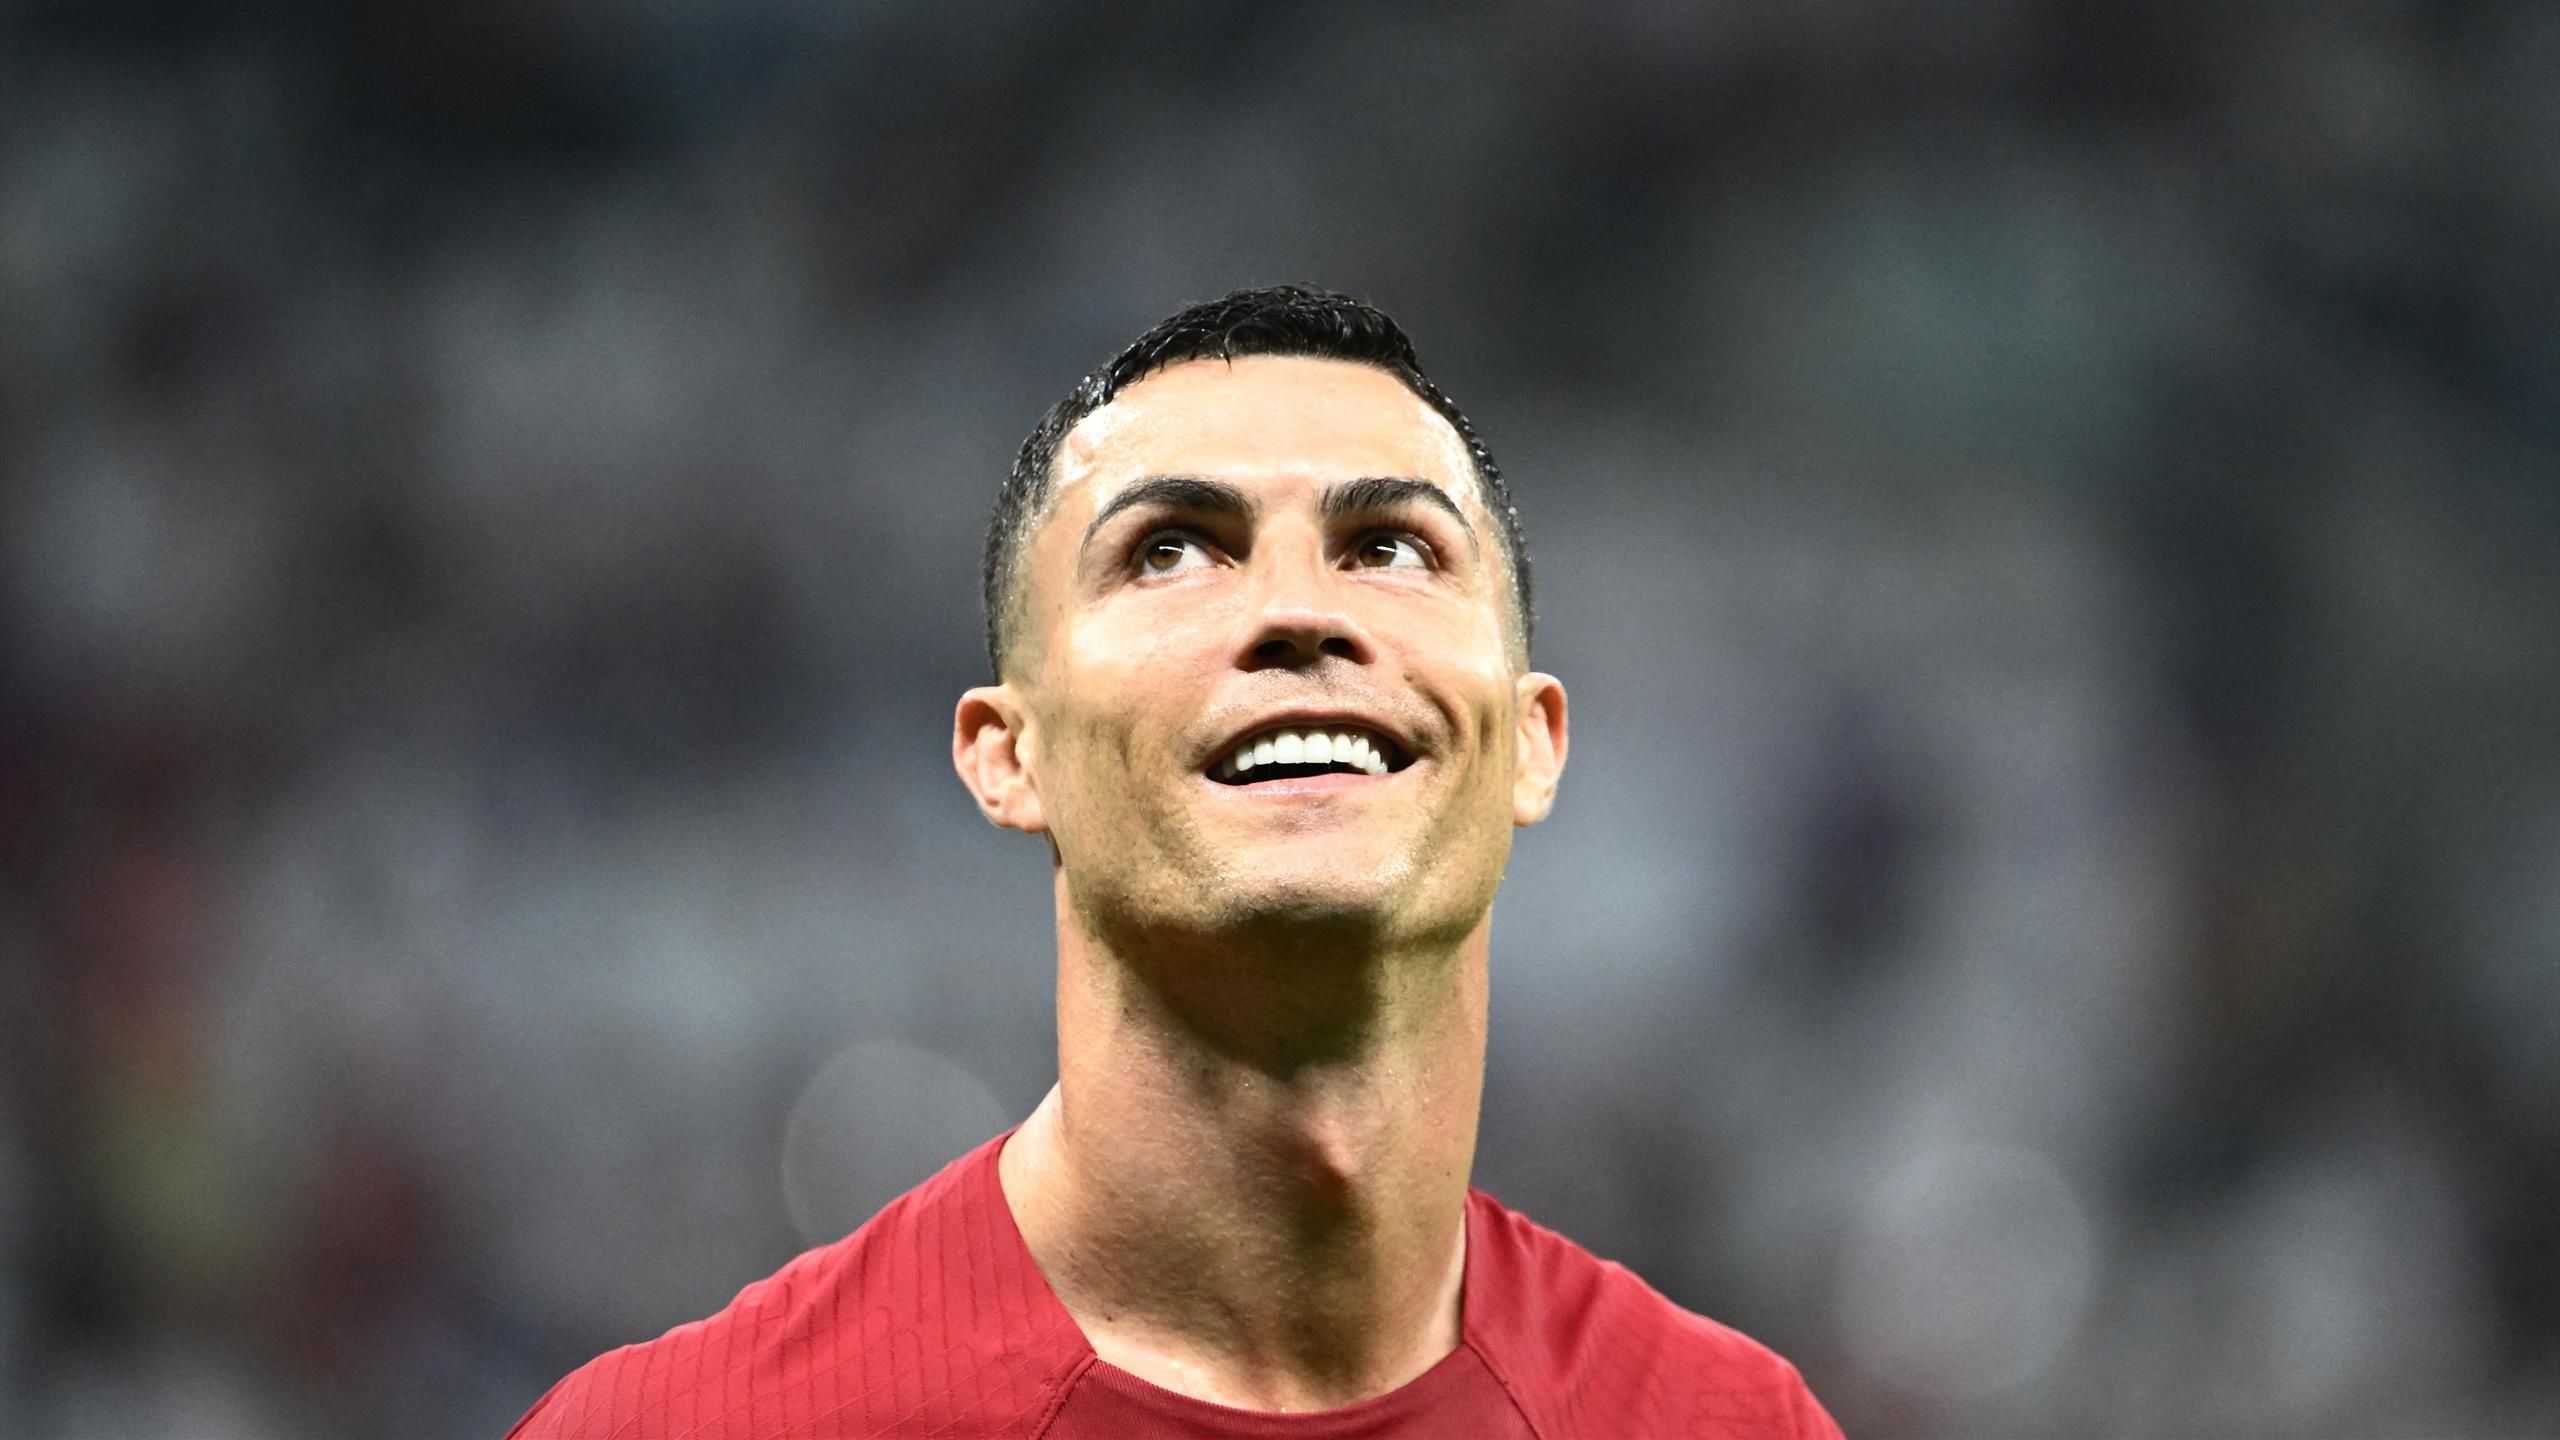 Роналду улыбается. Роналдо. Ronaldo Newcastle. Ronaldo smile.